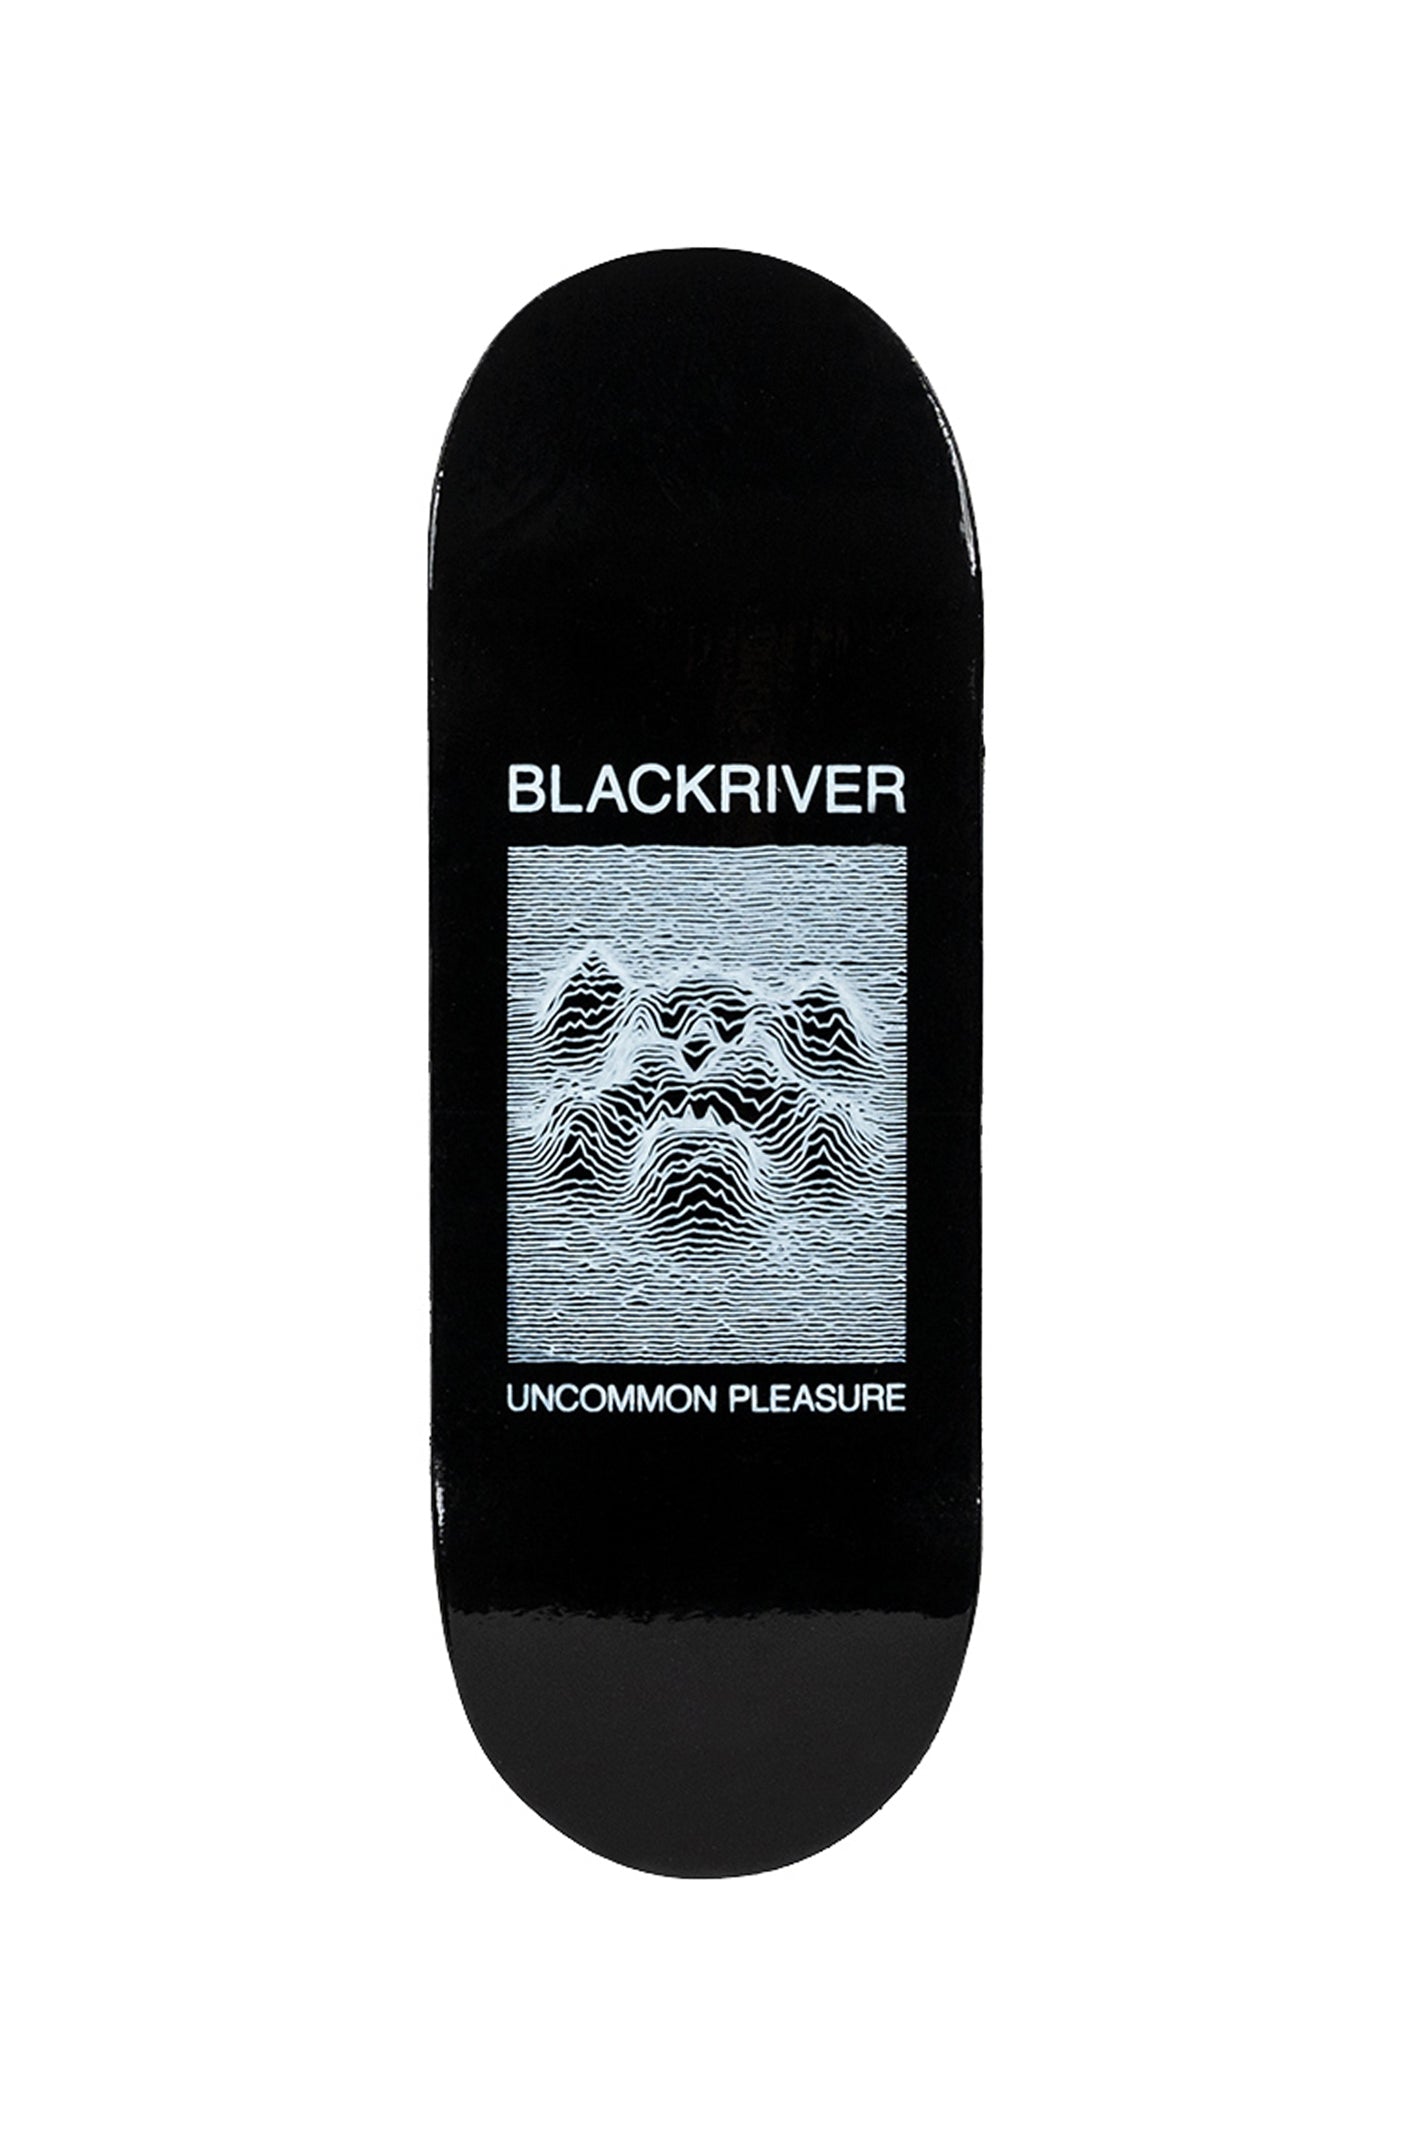 Blackriver Fingerboard 'Uncommon Pleasure'